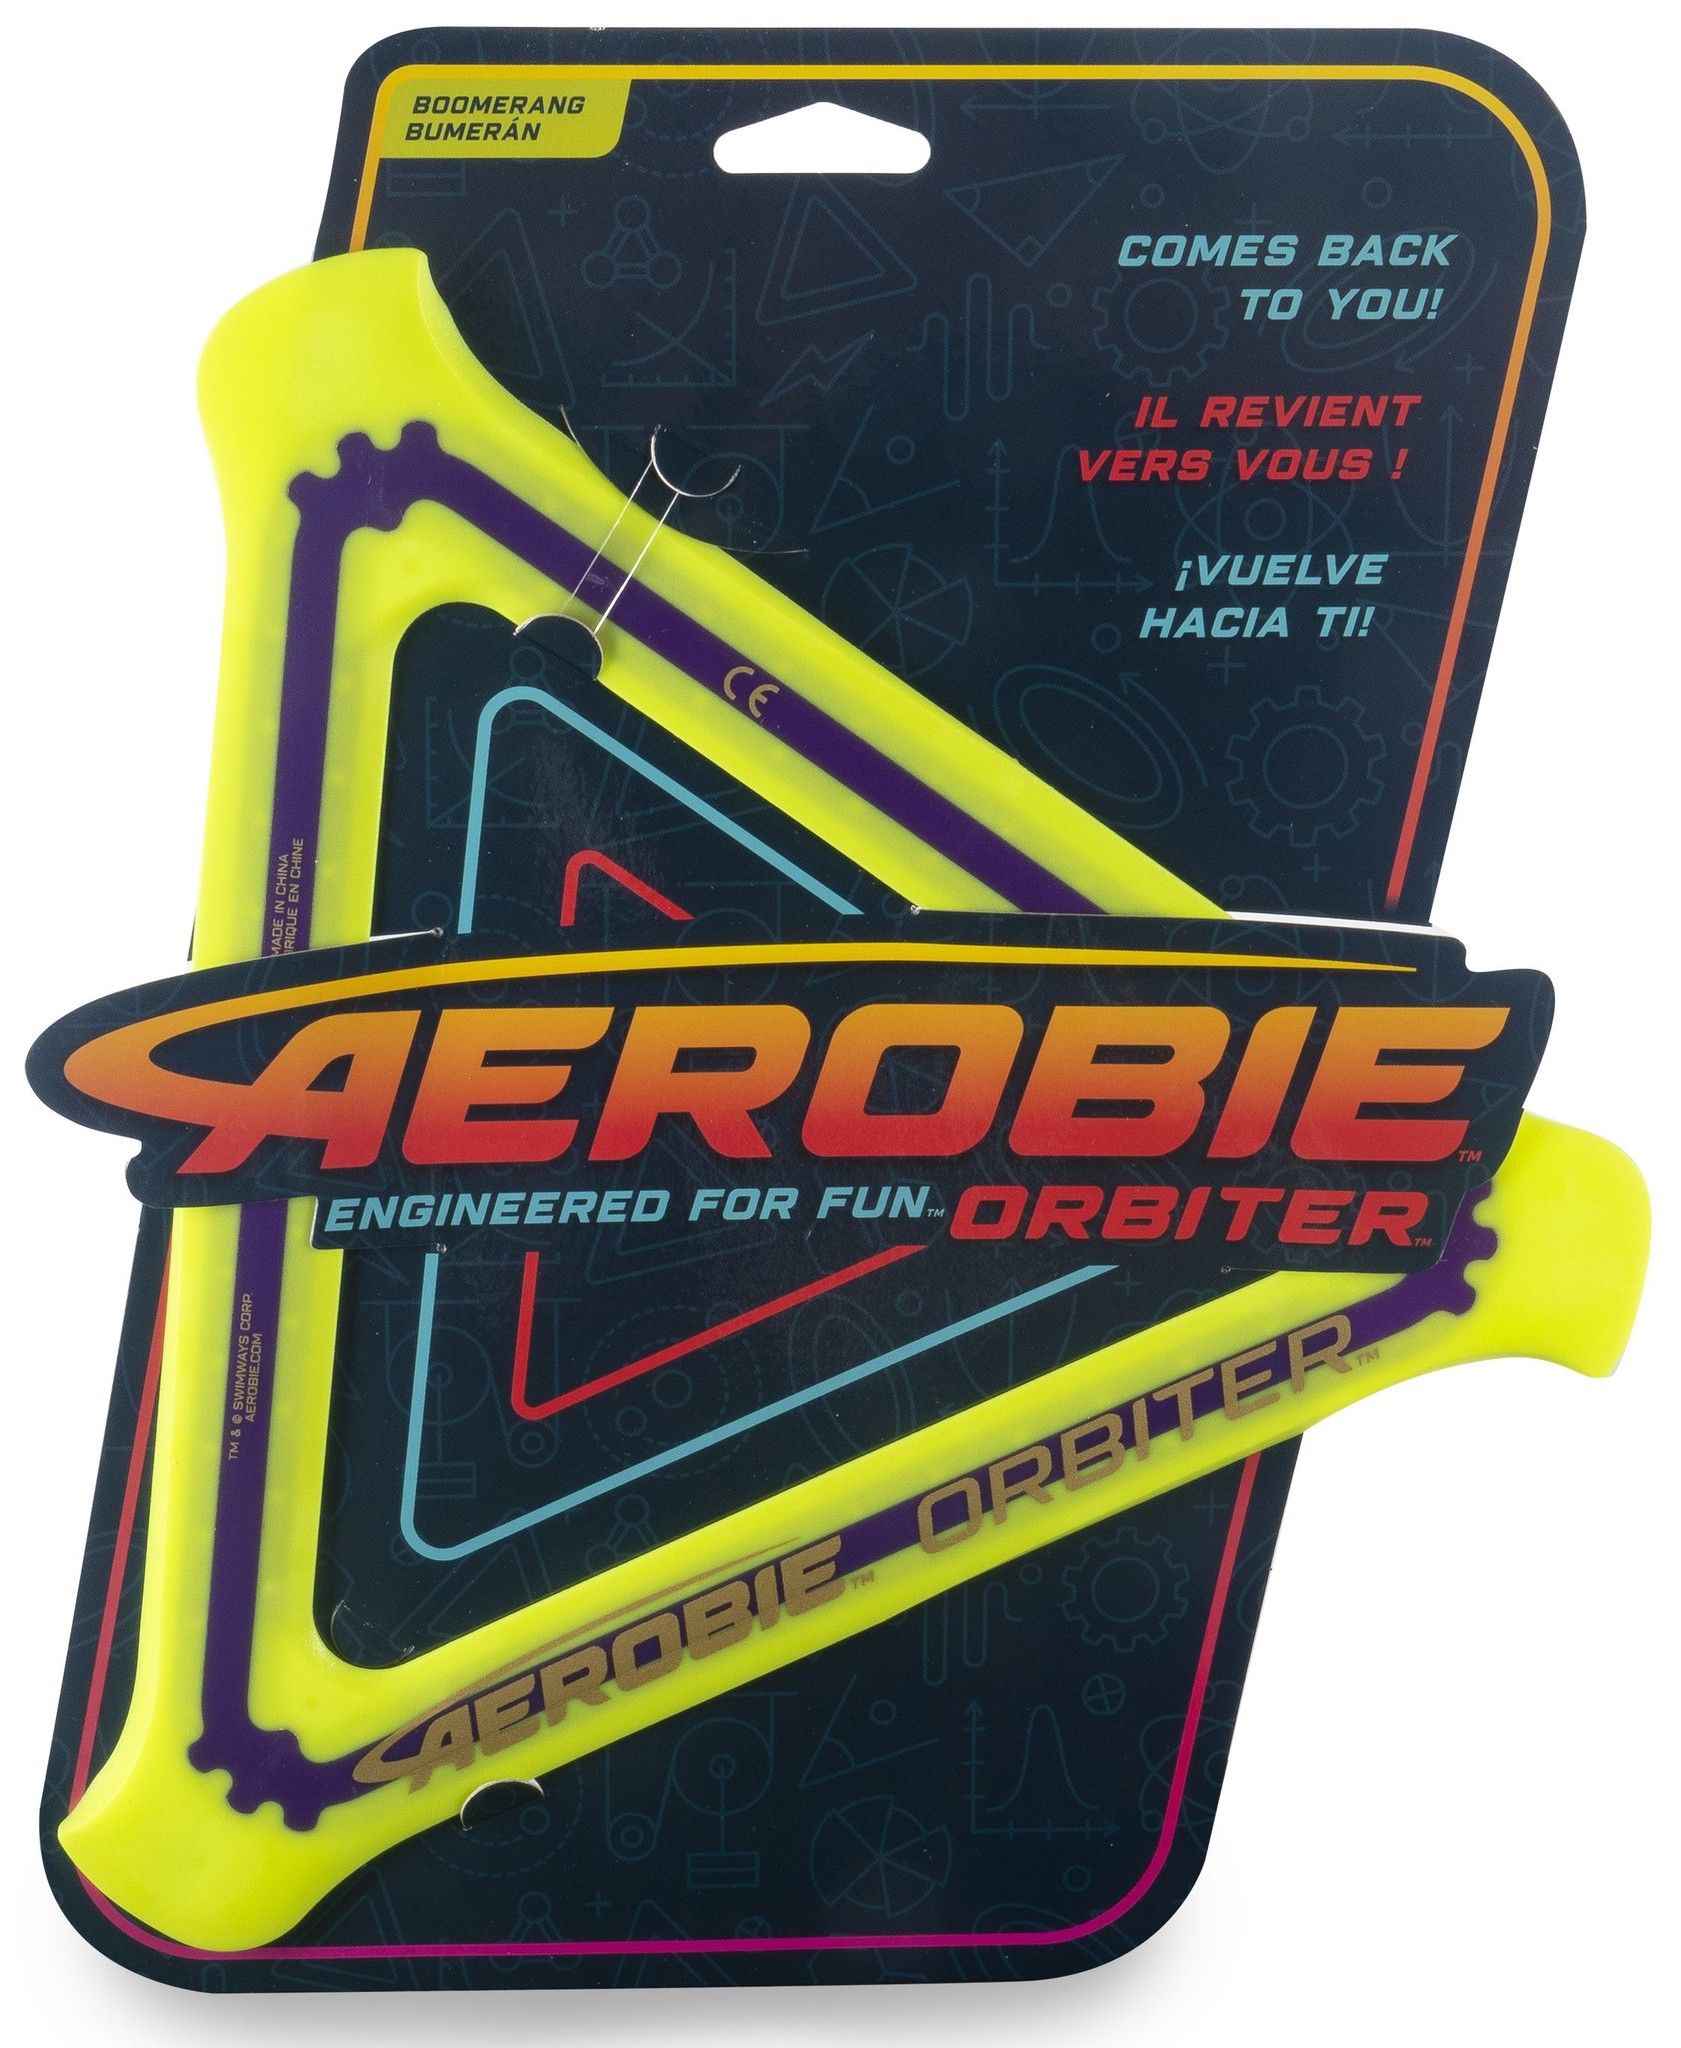 Aerobie AEROBIE-Orbiter driehoekige boemerang